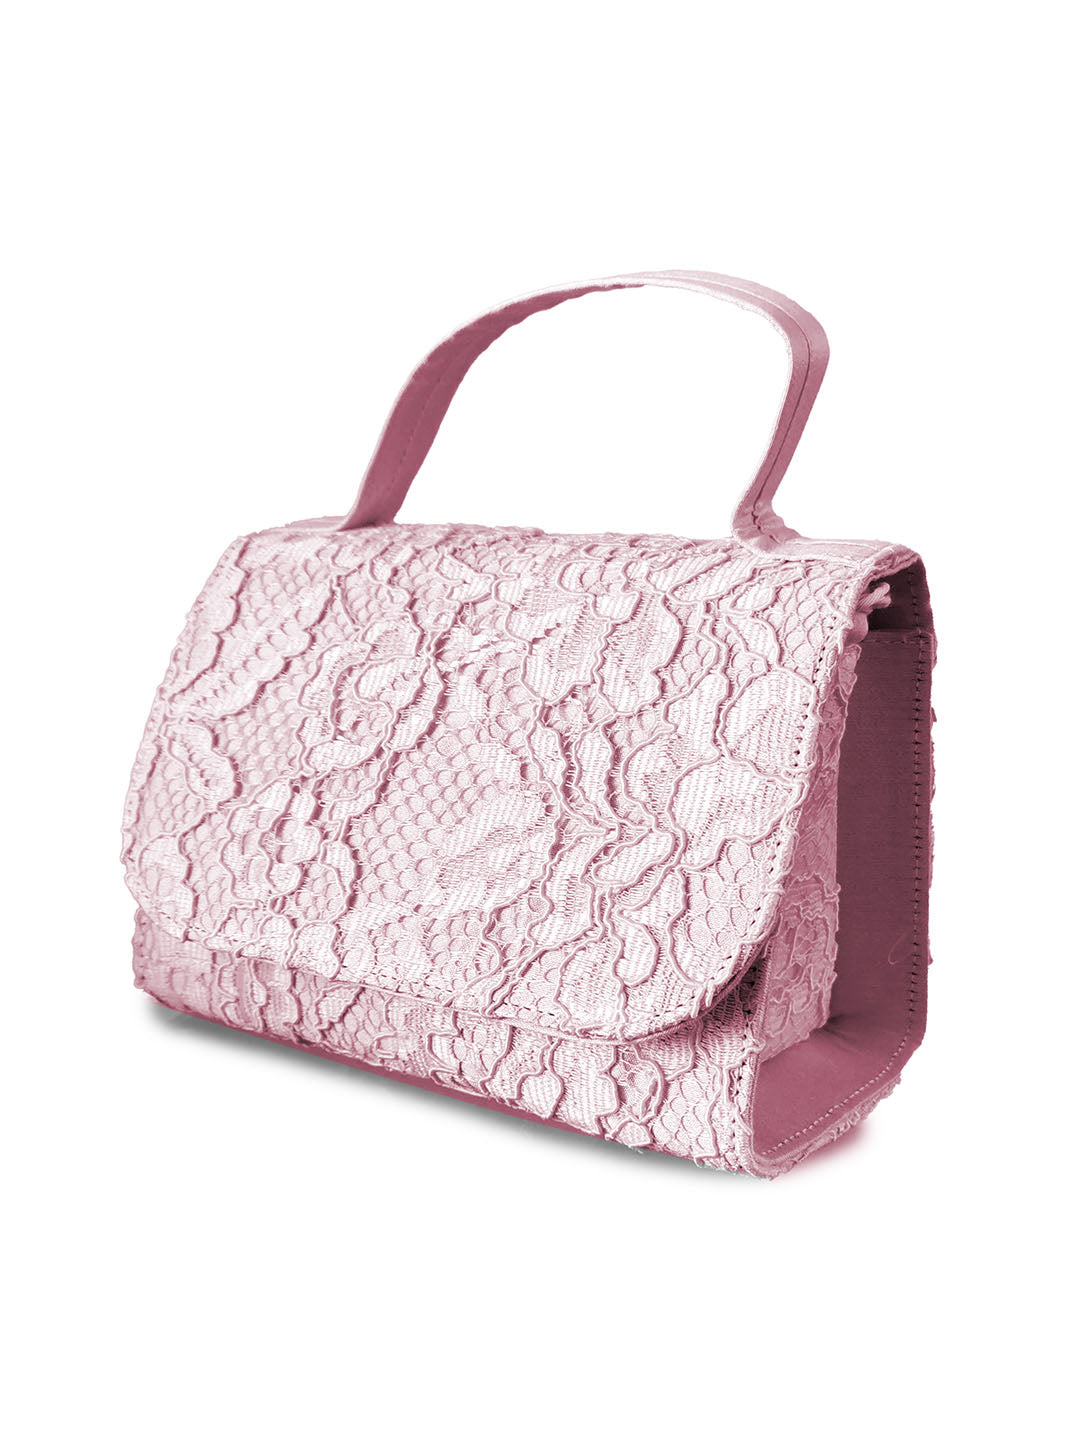 Lace Top Handle Bag | Marchesa